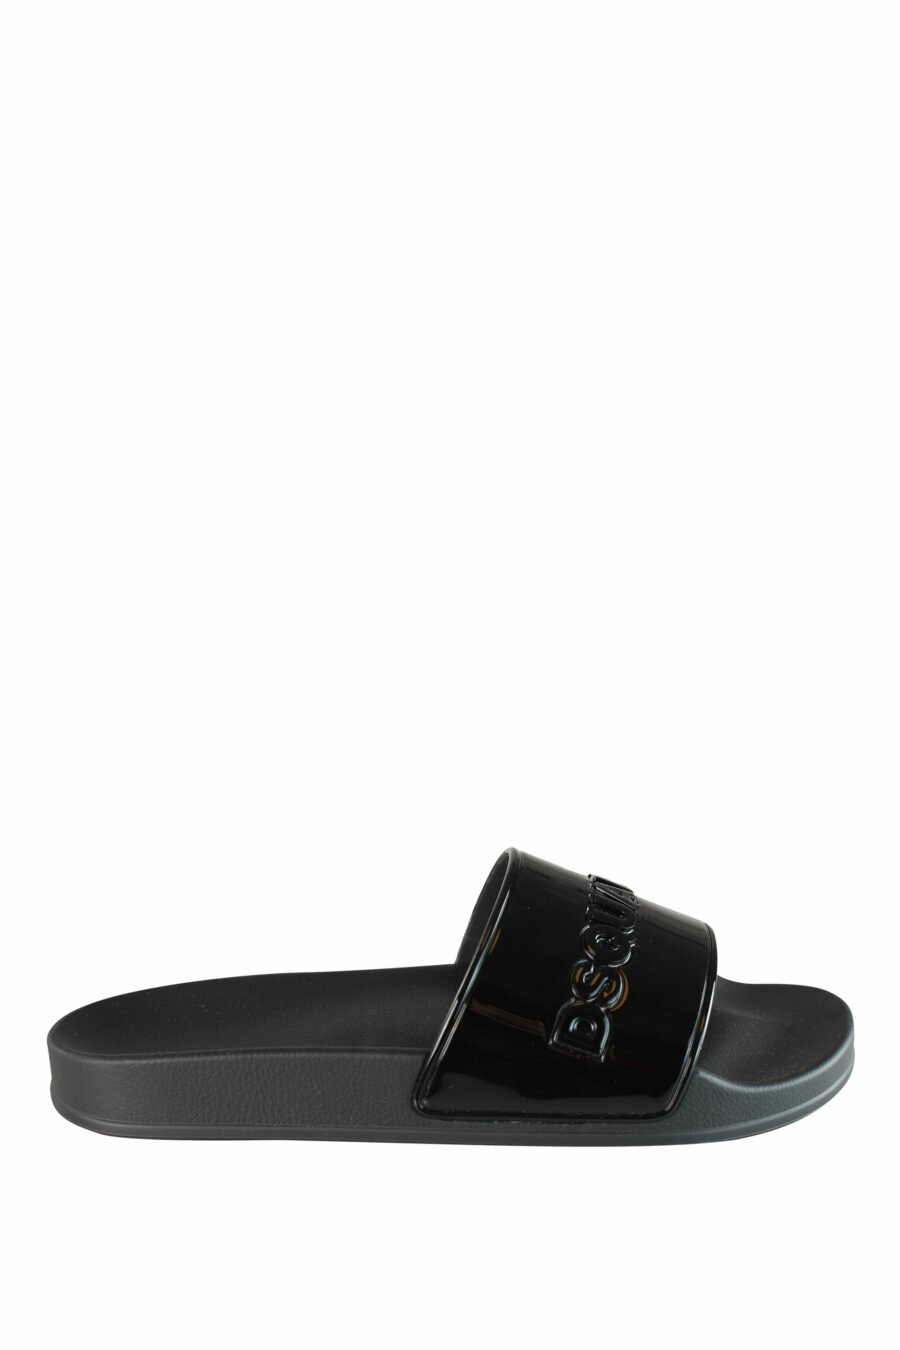 Shiny black flip flops with black maxilogo - IMG 1335